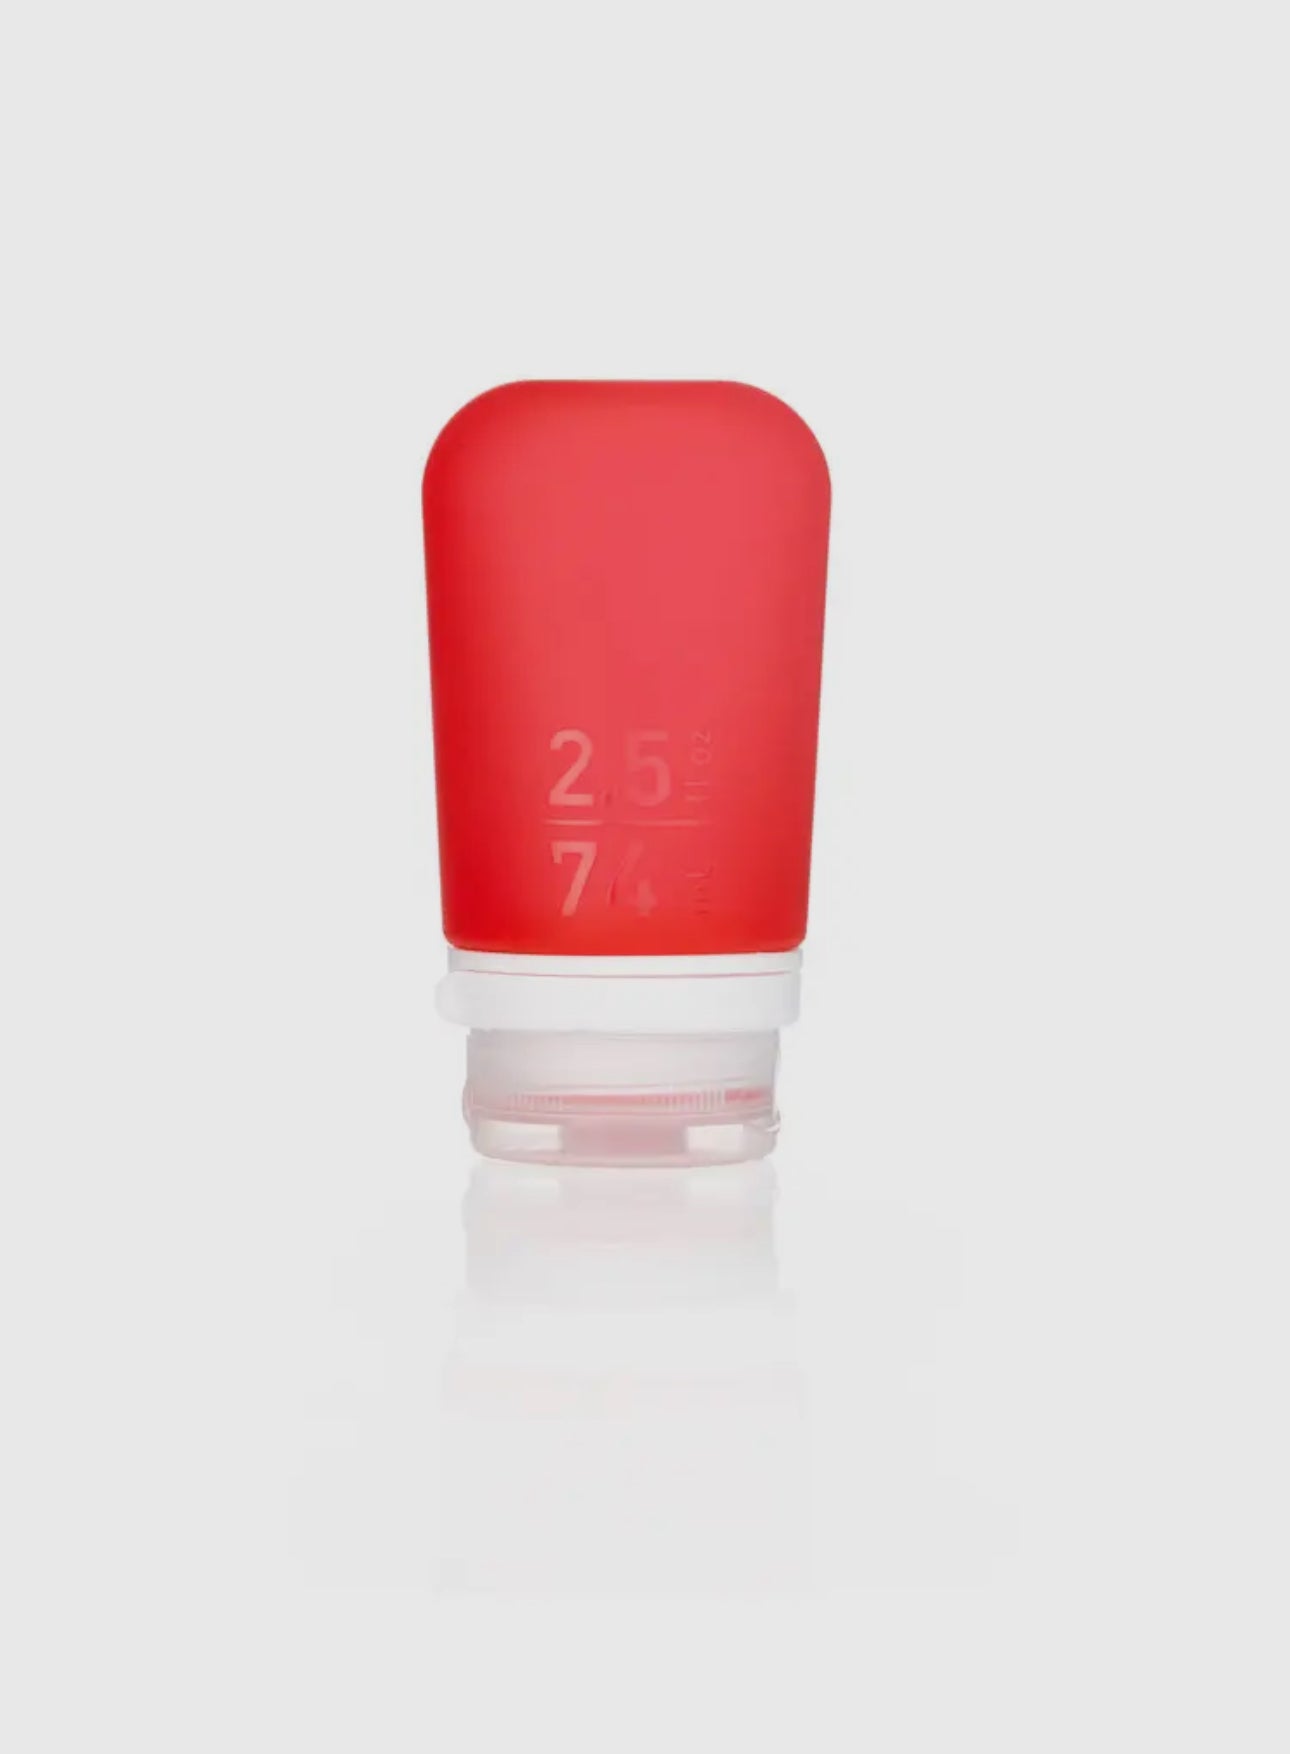 Humangear- Botella 3-1-1 de artículos de tocador de silicona GoToob+ de 2.5 oz (MEDIO) - Colores surtidos